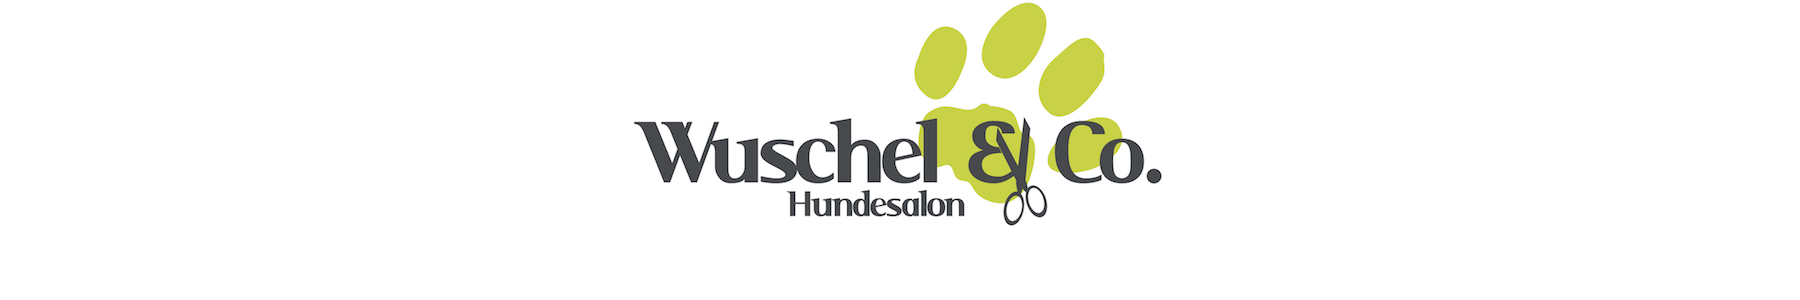 Wuschel & Co.